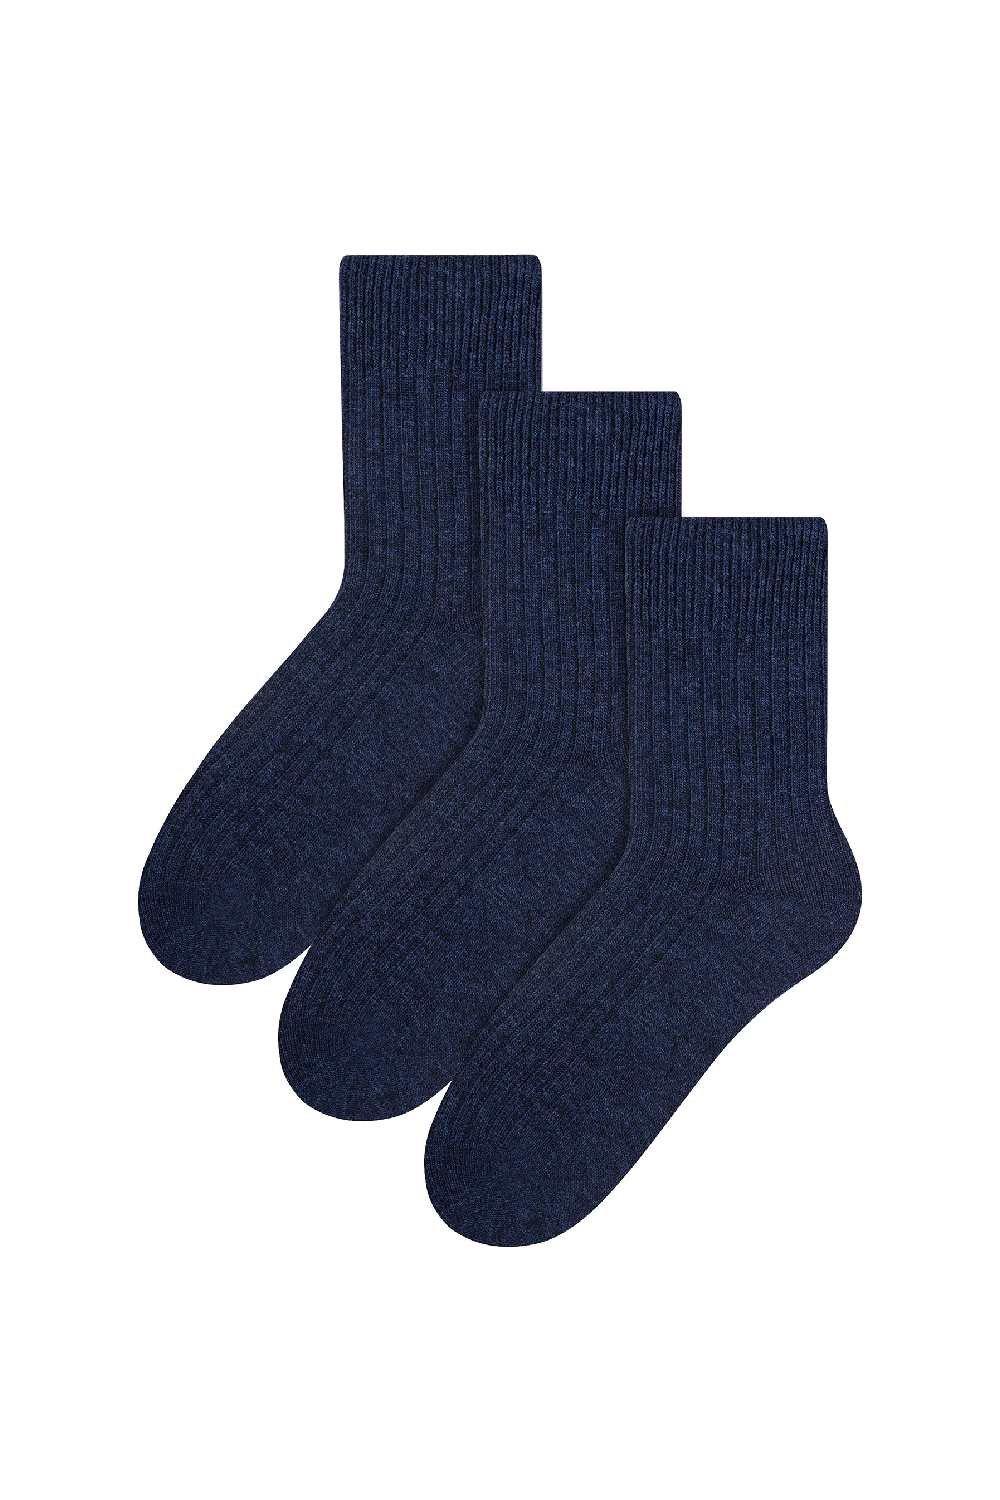 3 пары шерстяных зимних легких теплых носков Steven, синий